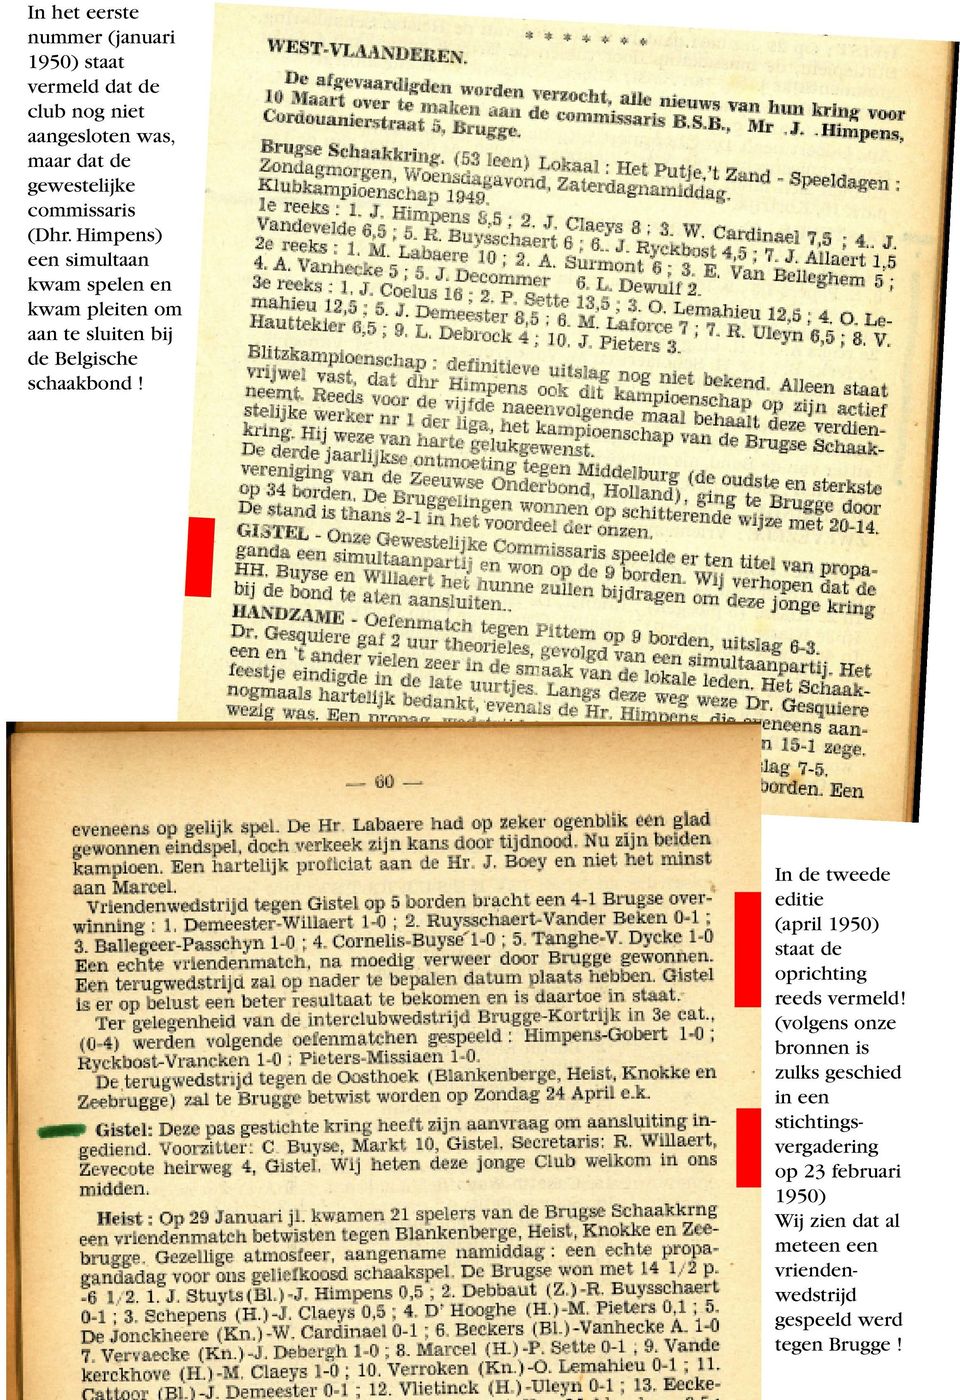 In de tweede editie (april 1950) staat de oprichting reeds vermeld!